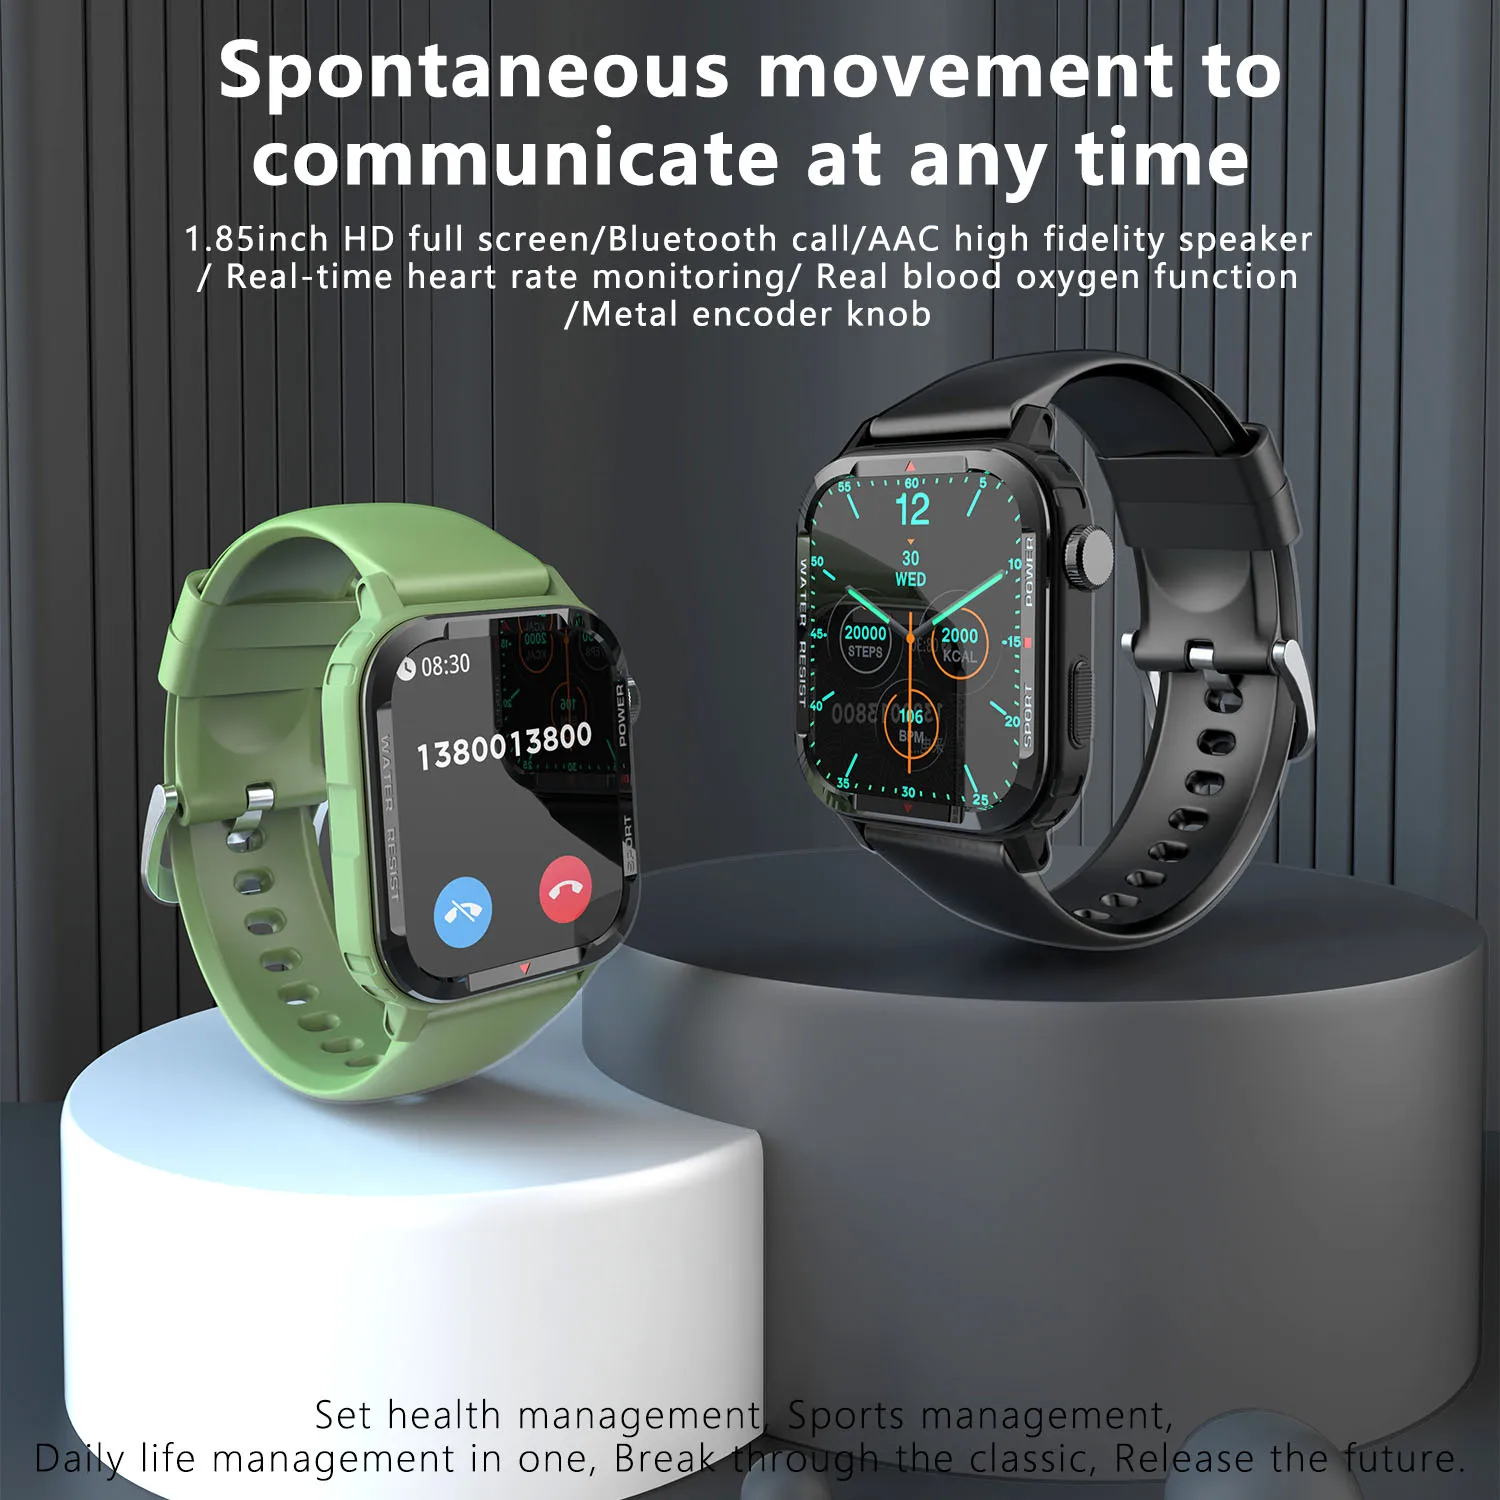 Açık Smartwatch 1.85 inç Tam Dokunmatik Ekran Ses aAssistant Bluetooth Çağrı 123 Spor Modu nabız monitörü akıllı saat Görüntü 1